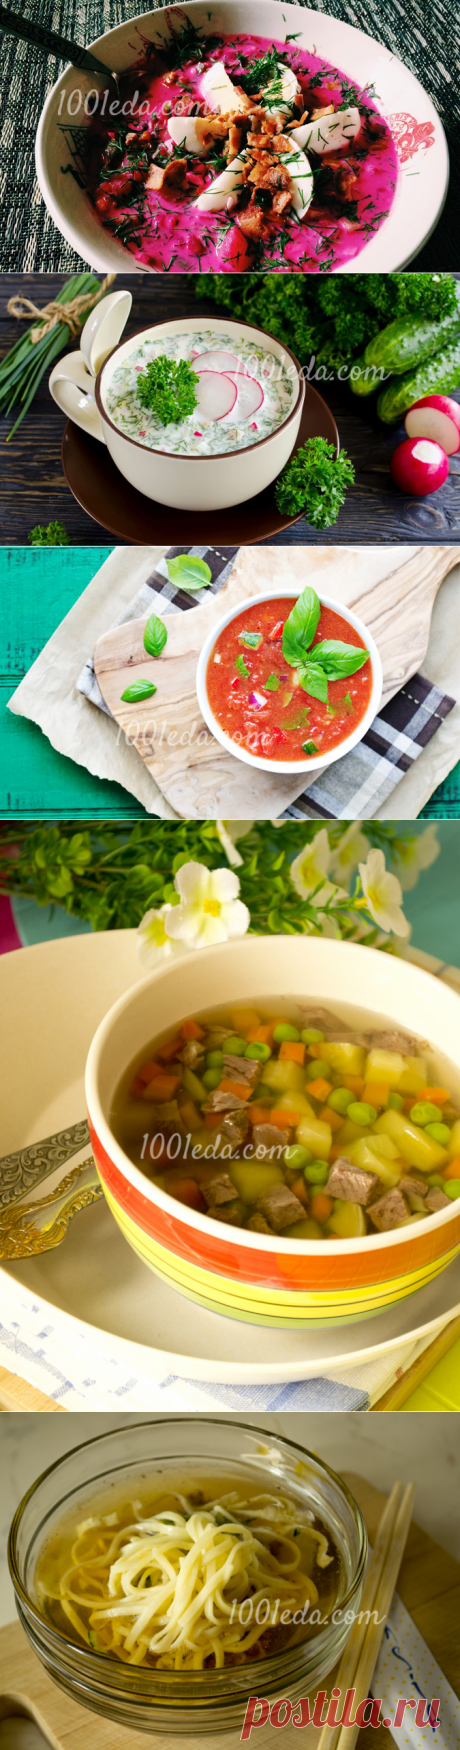 Холодные супы: лучшие рецепты - 1001 ЕДА